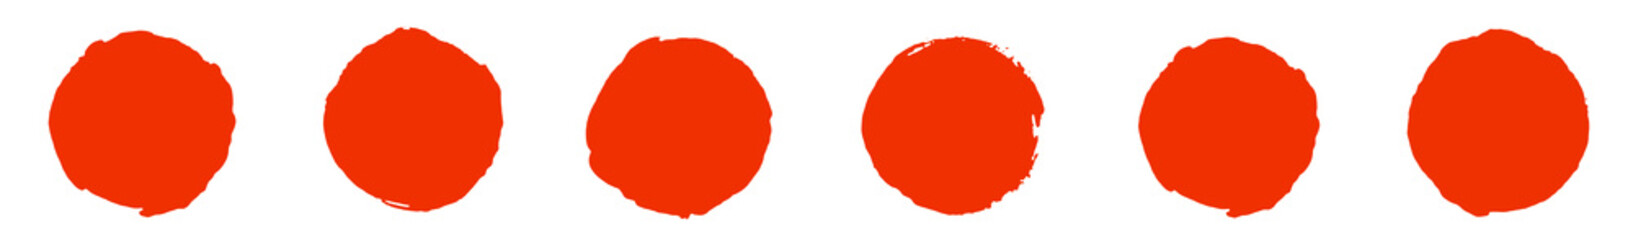 6 gemalte Kresie in rot als banner oder Vorlage für Button